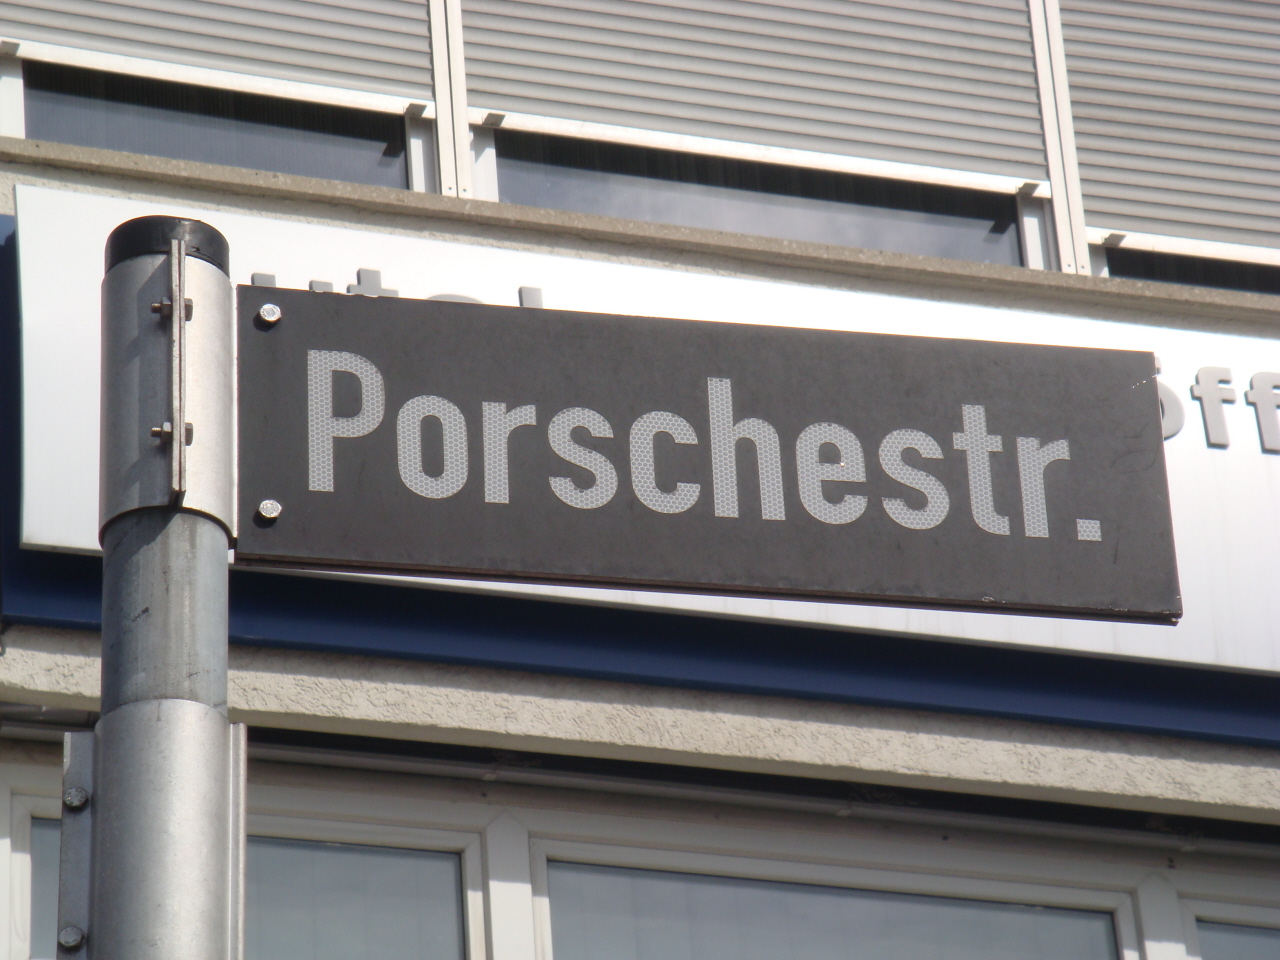 Visita Rapida a Porsche / Fast Visit to Porsche-porschestreet.JPG